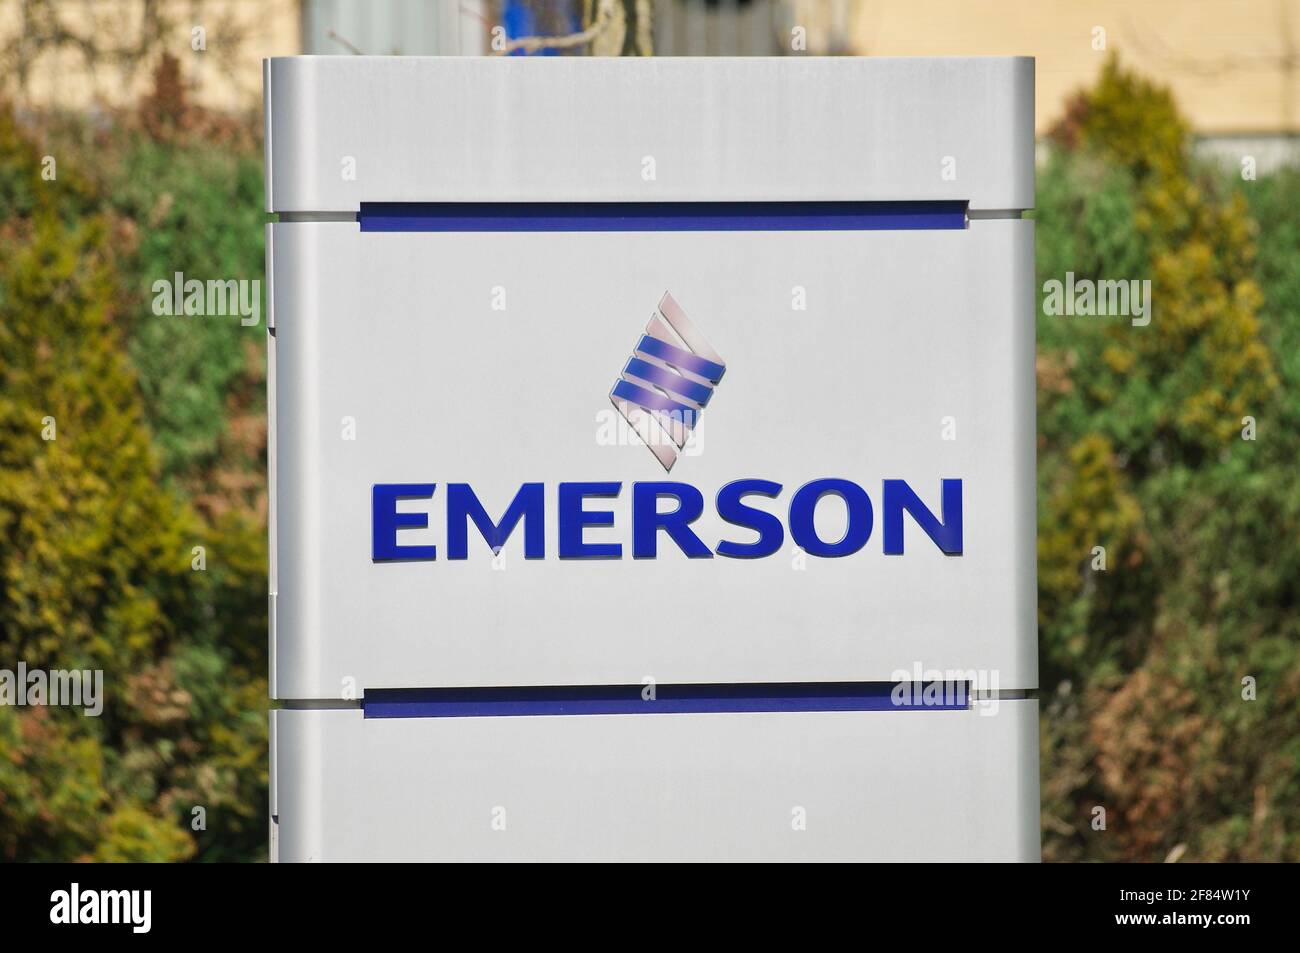 Baar, Zug, Suisse - 28 mars 2021 : Emerson Electric Co. Signe à Baar, Suisse. Emerson est une multinationale américaine ma Banque D'Images